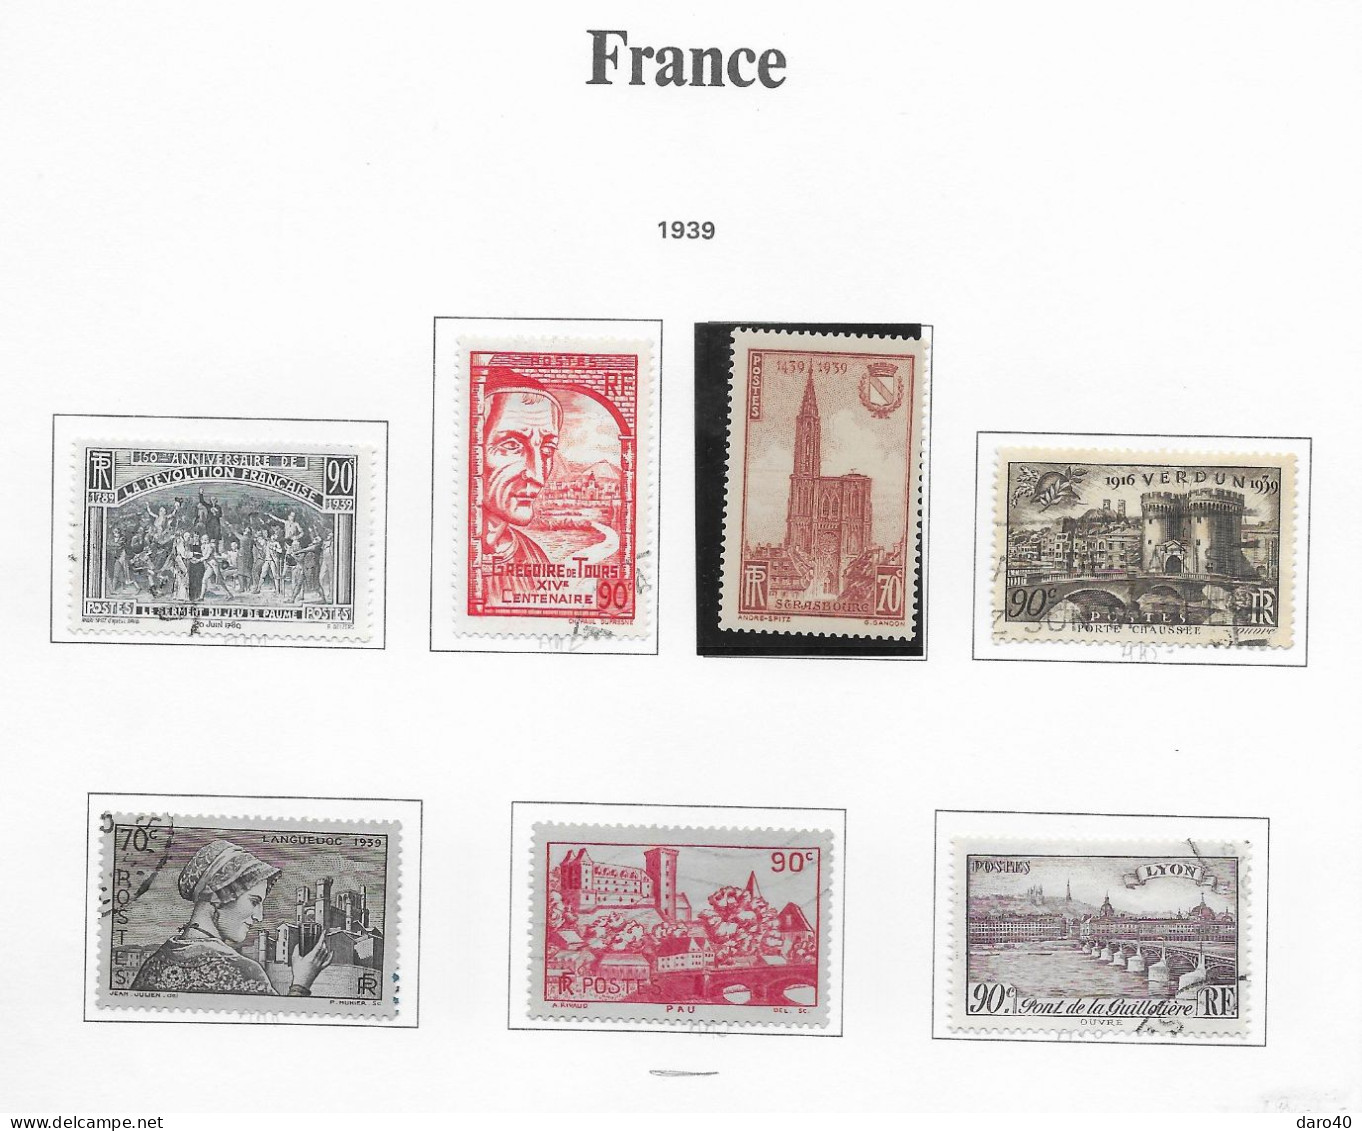 2 classeurs de timbres de France neuf et obl sur charnières du 183 au 2613 + PA